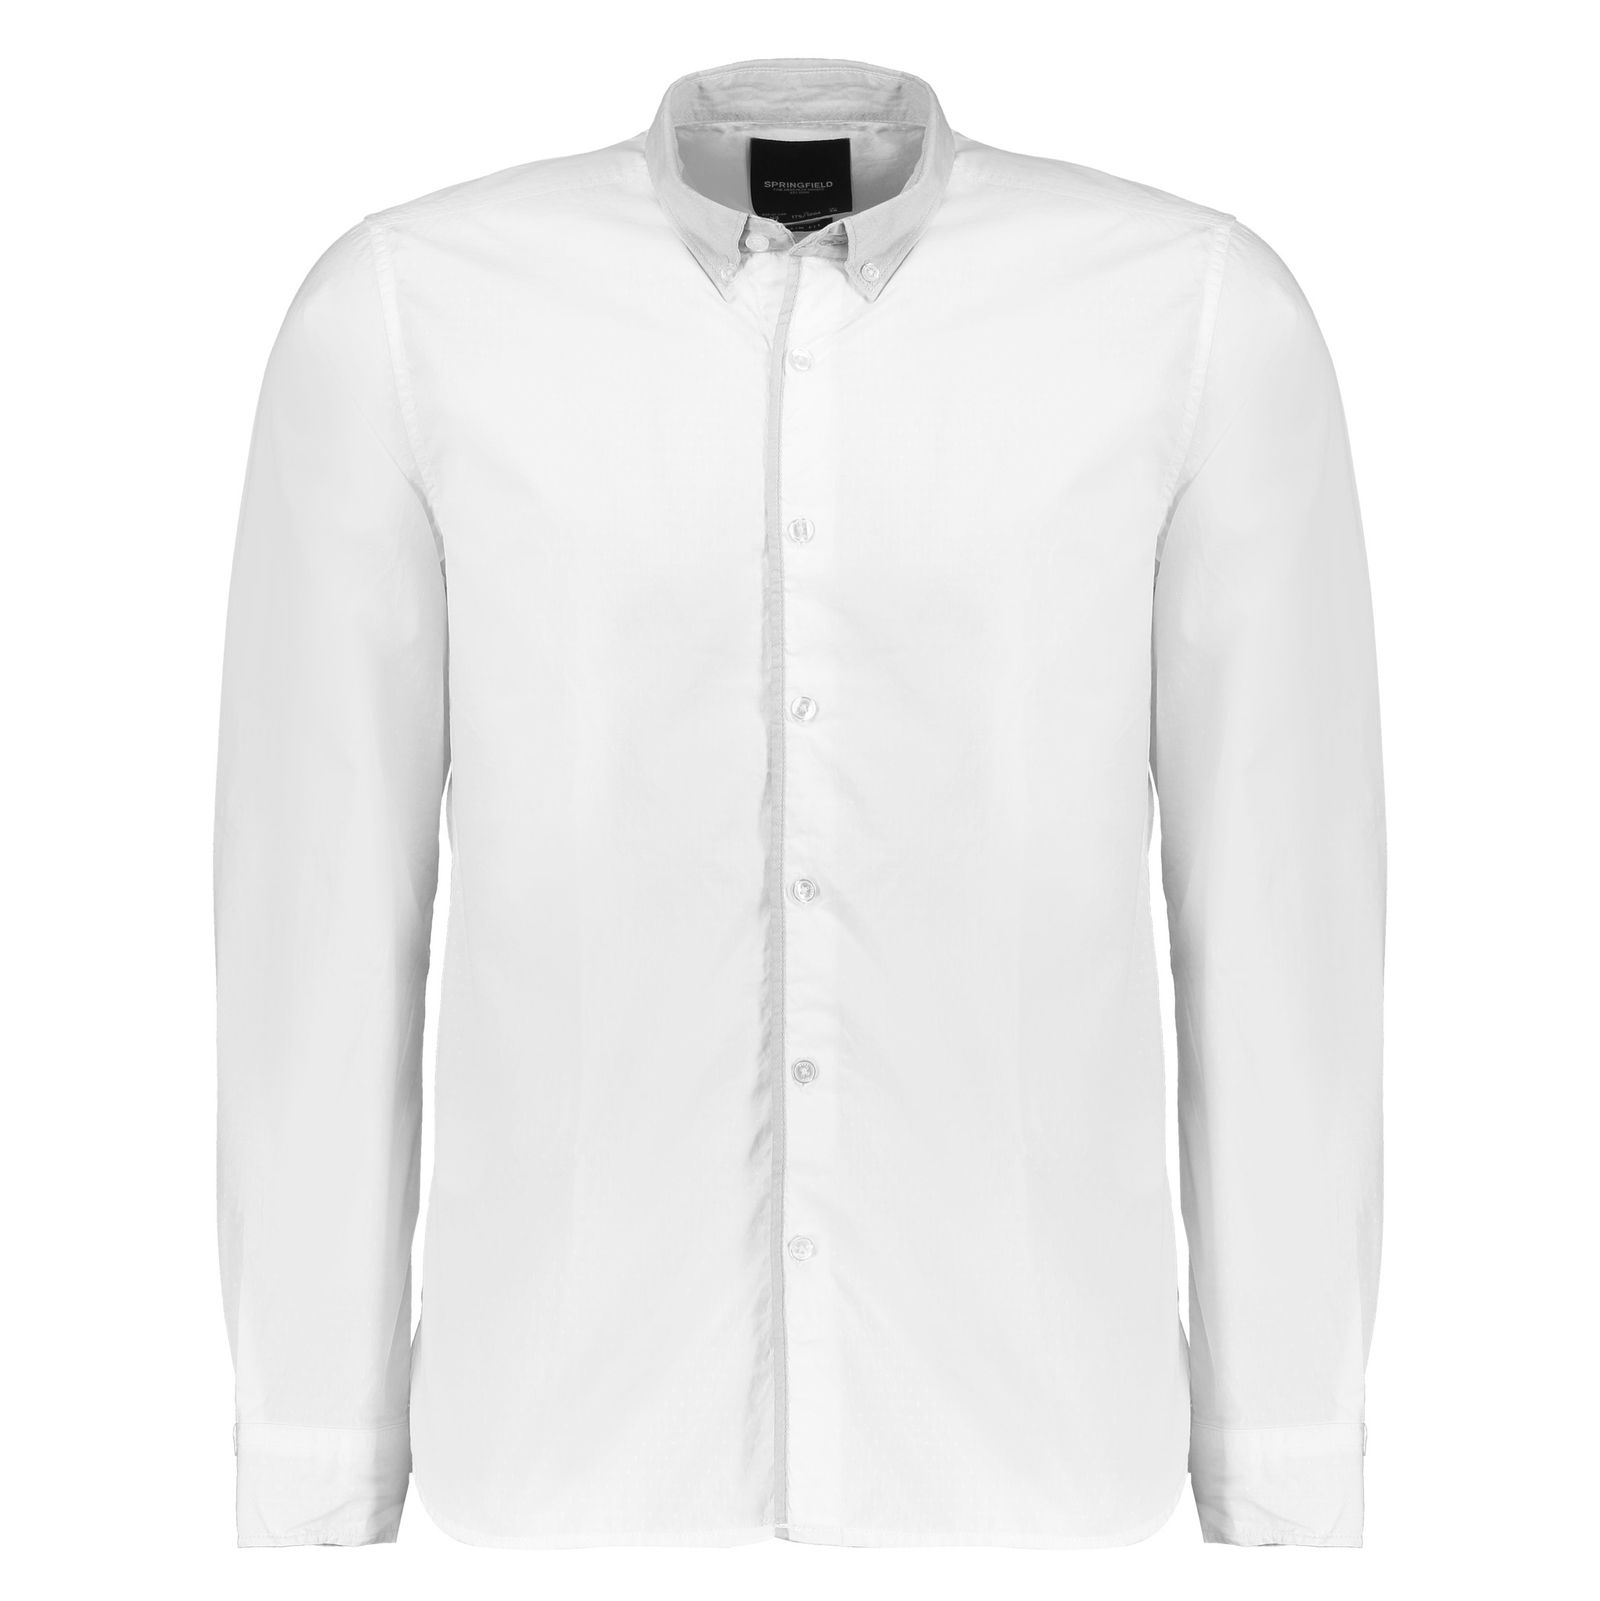 پیراهن مردانه اسپرینگ فیلد مدل 1506544-99 - سفید - 2